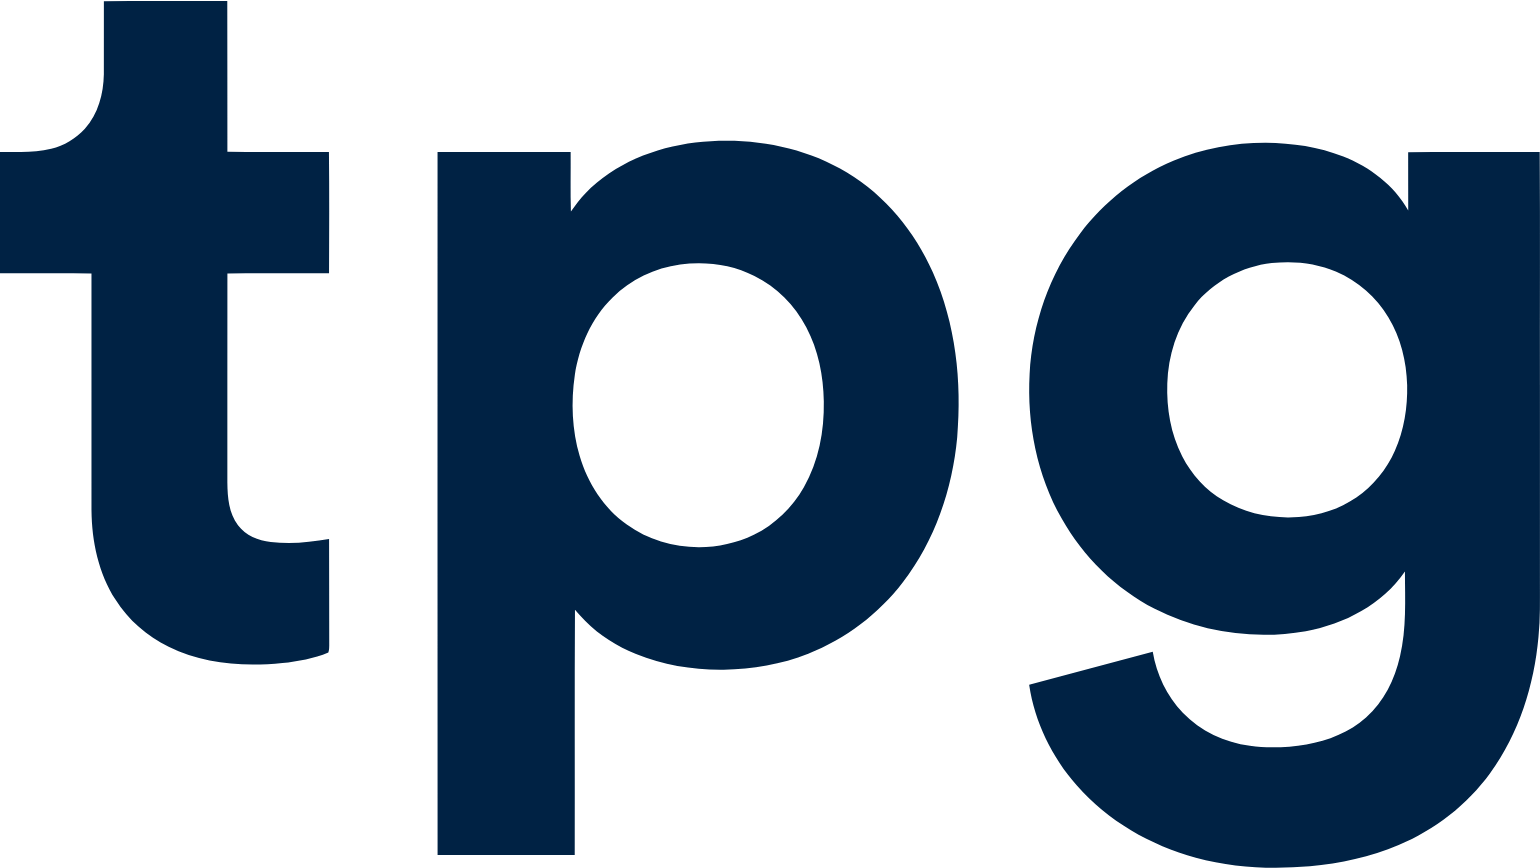 TPG Telecom logo (PNG transparent)